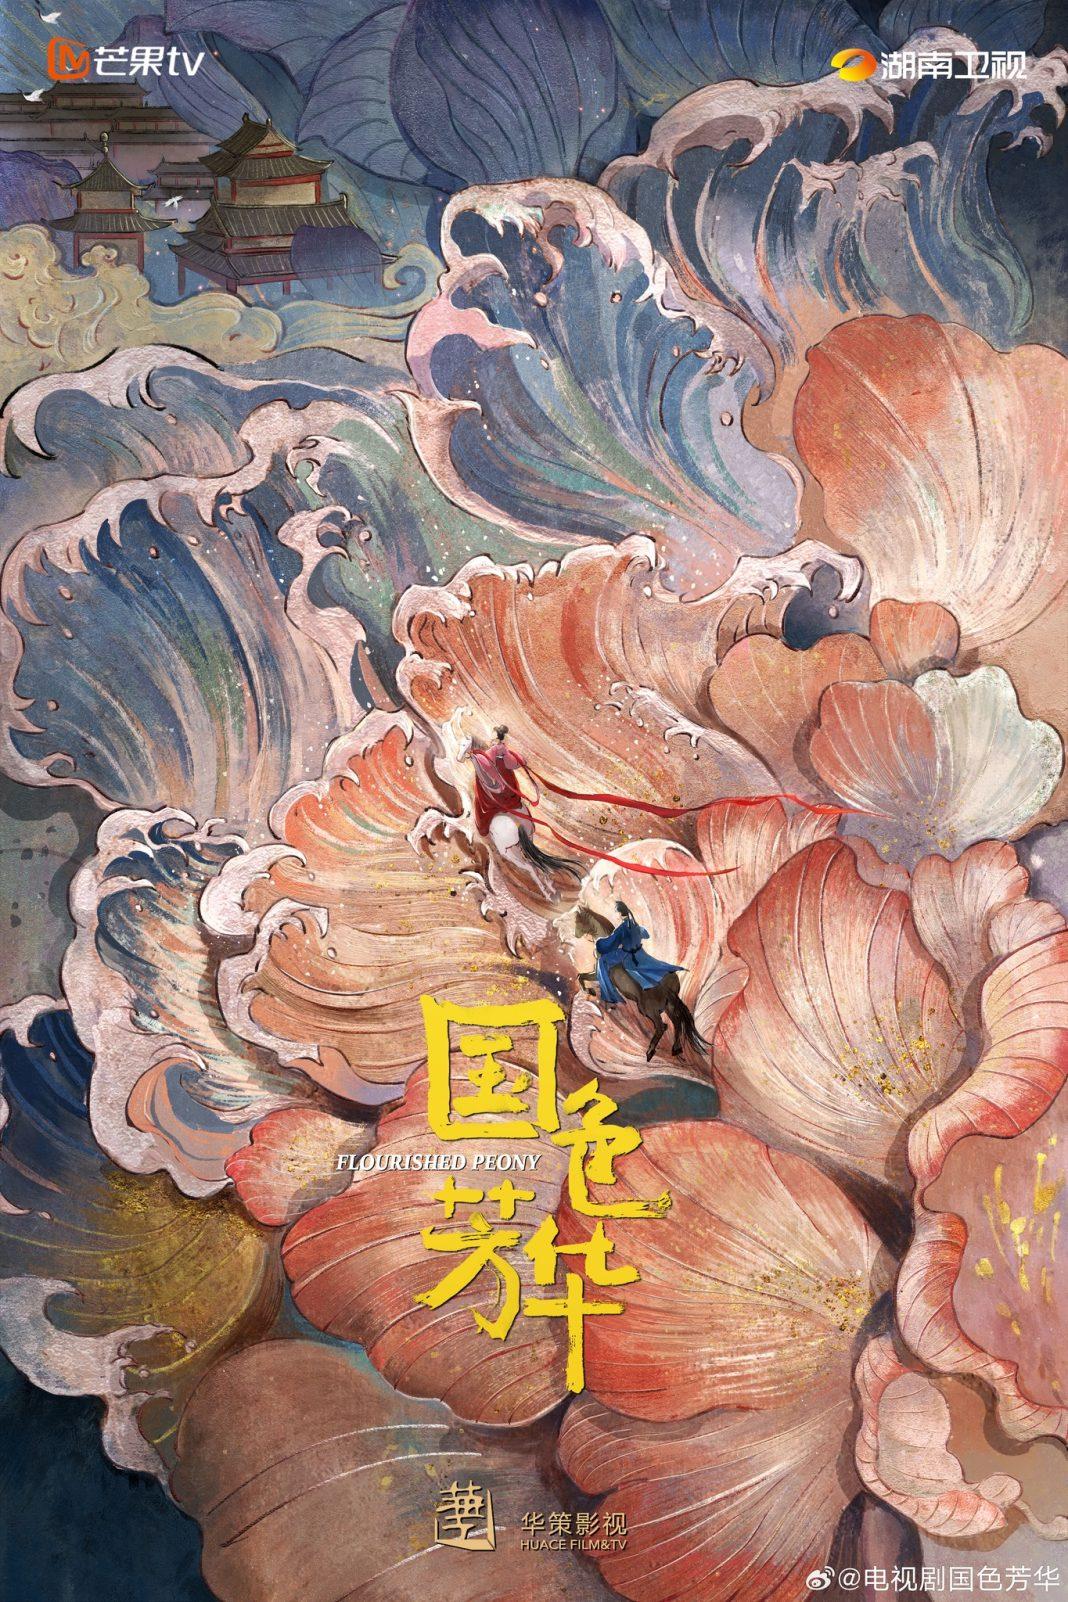 Poster khái niệm phim Quốc Sắc Phương Hoa